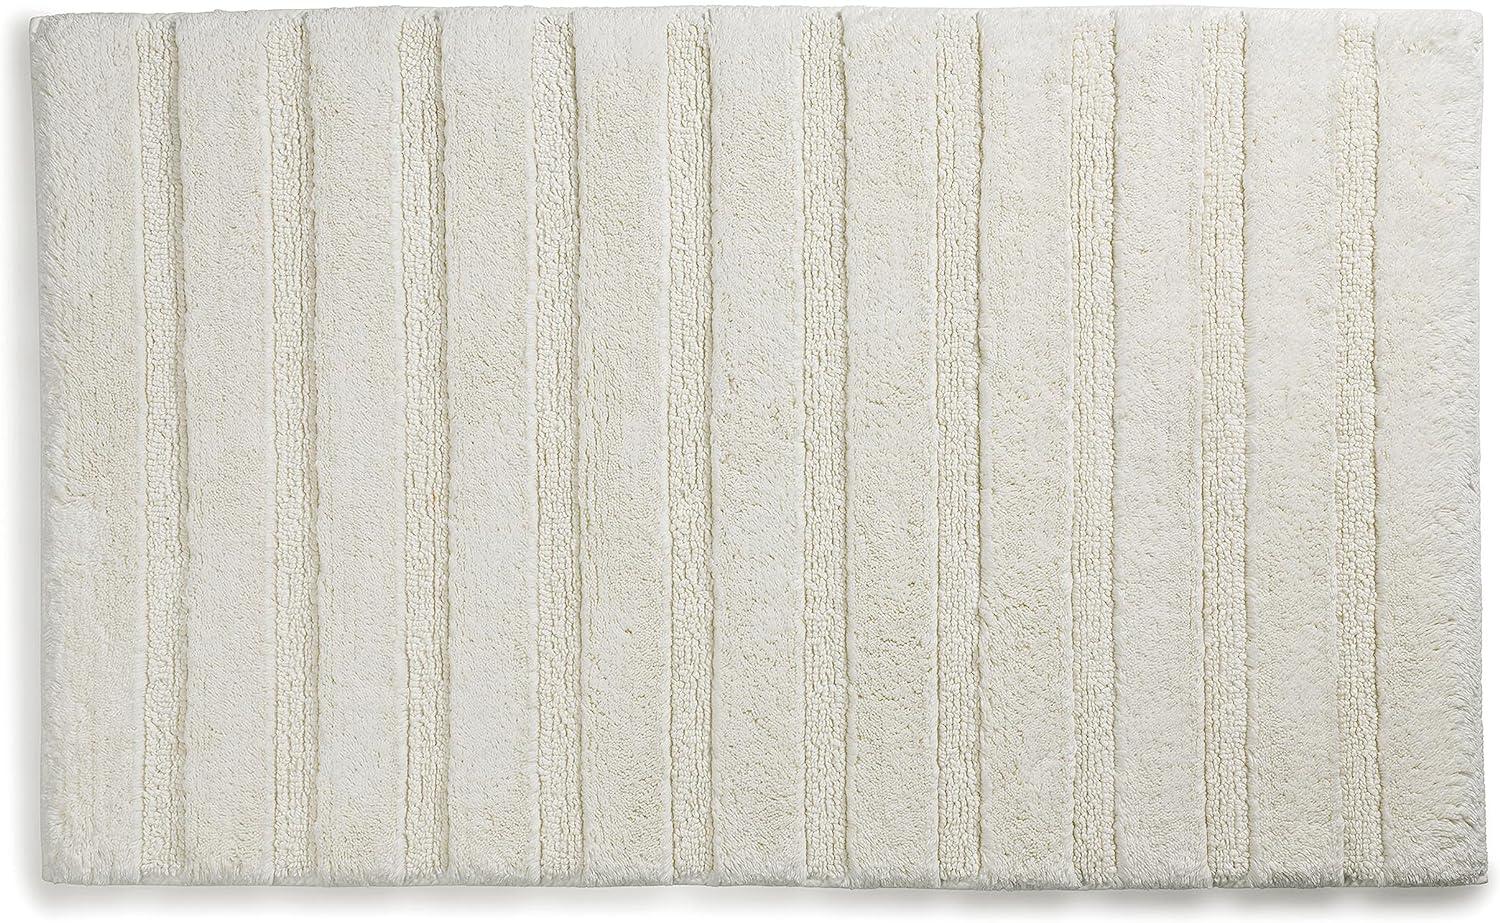 Kela Badematte Megan, 80 cm x 50 cm, 100% Baumwolle, Offwhite, rutschhemmend, waschbar bis 30° C, geeignet für Fußbodenheizung, 23581 Bild 1